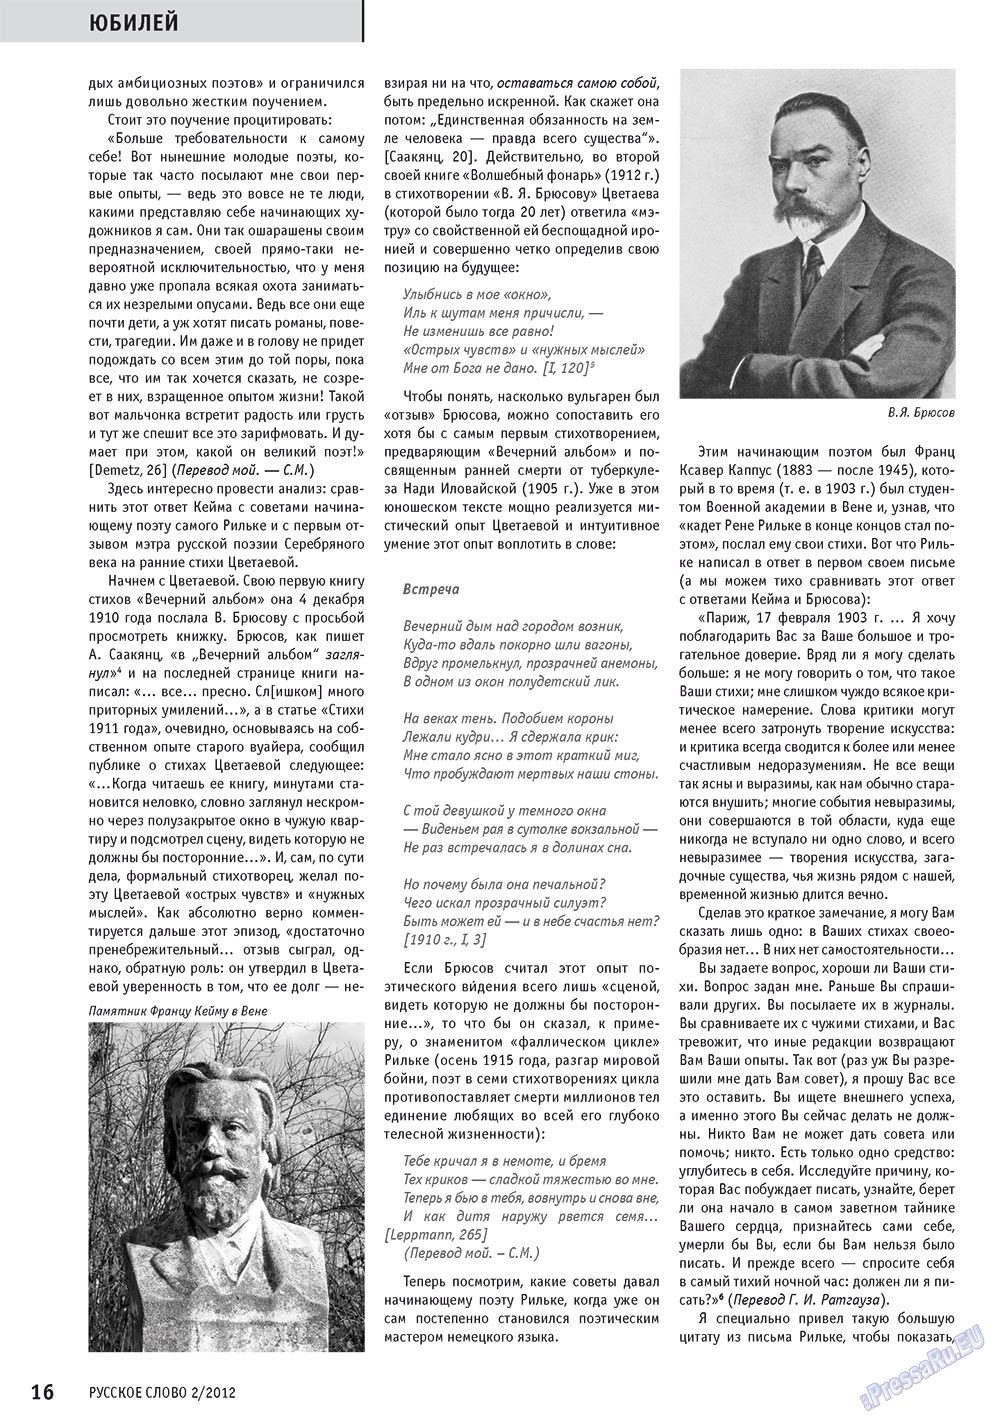 Русское слово, журнал. 2012 №2 стр.18